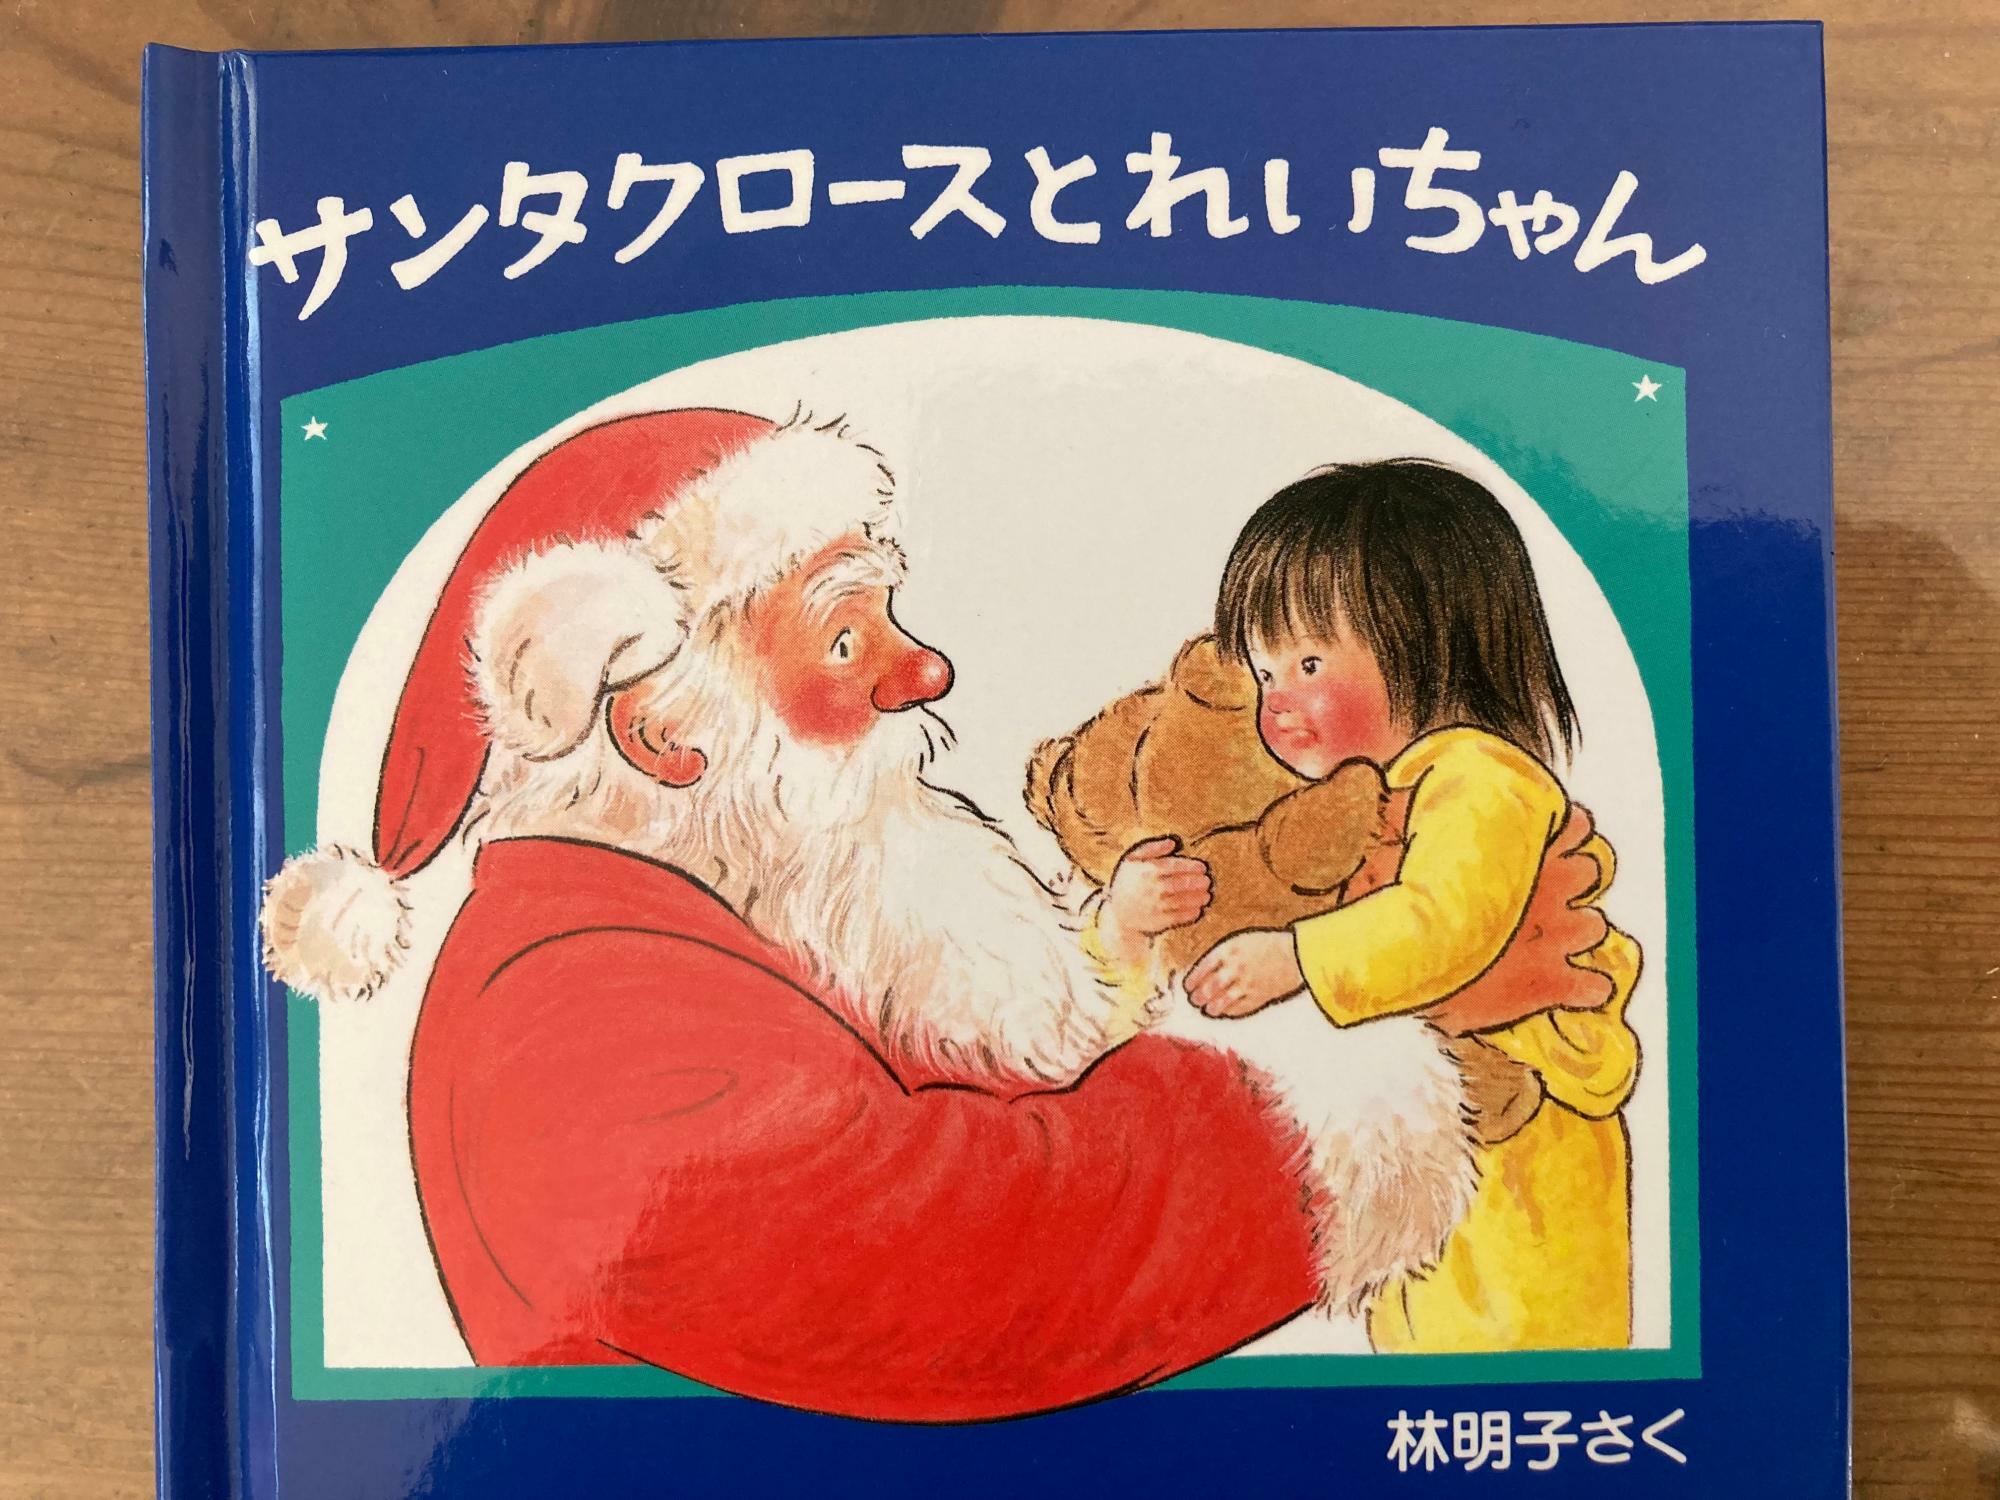 『サンタクロースとれいちゃん』作： 林 明子　出版社： 福音館書店　税込価格： ¥605